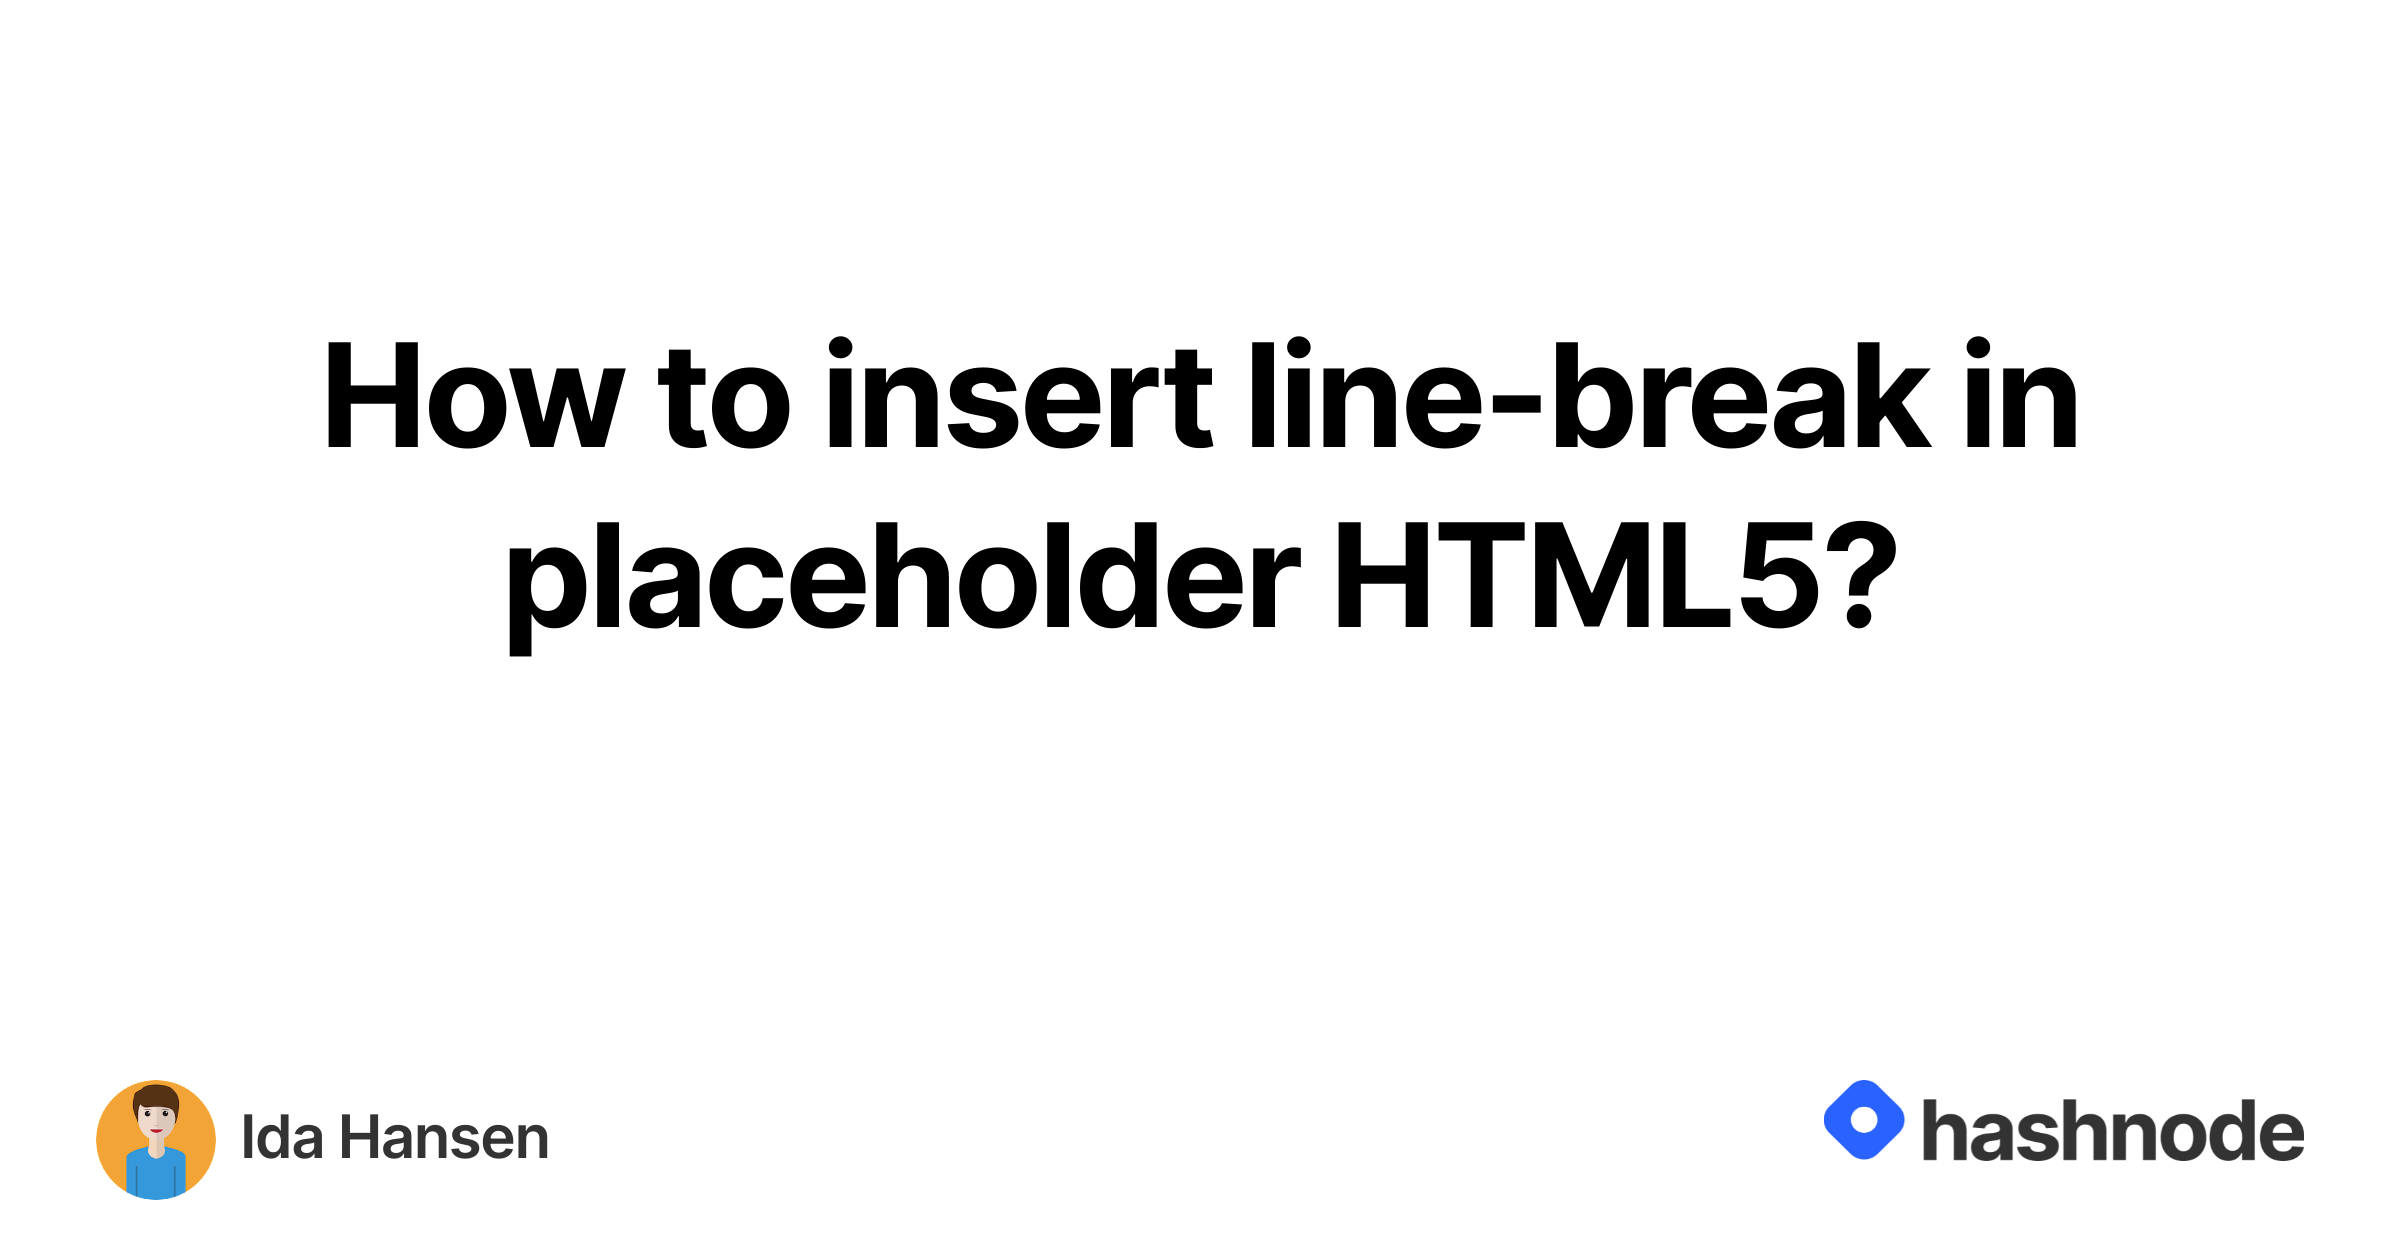 how-to-insert-line-break-in-placeholder-html5-hashnode